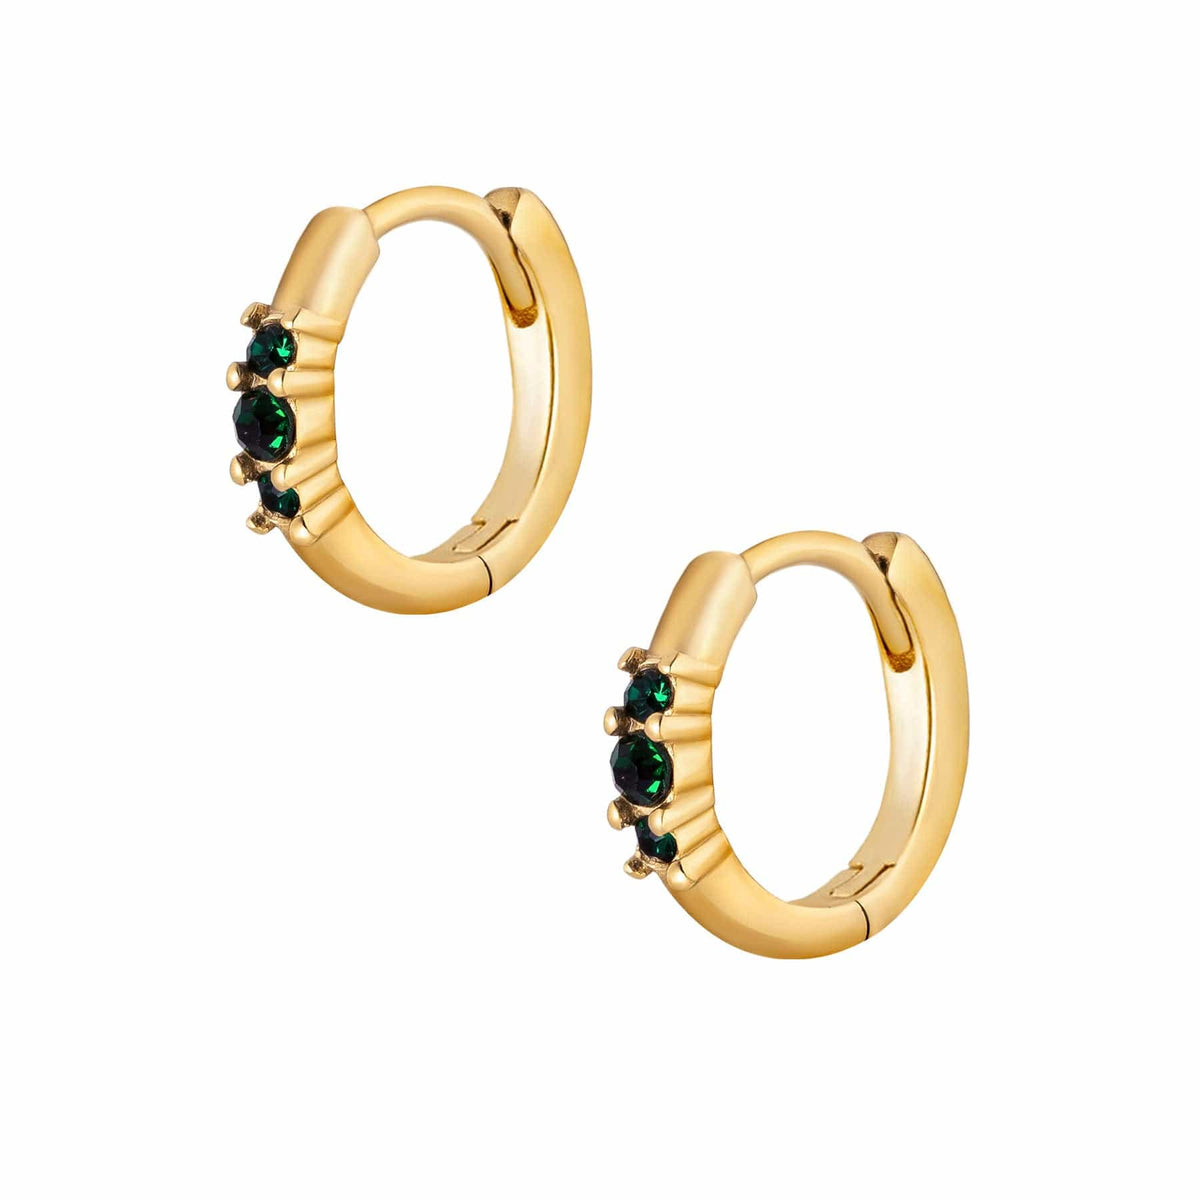 BohoMoon Stainless Steel Emerald Hoop Earrings Gold